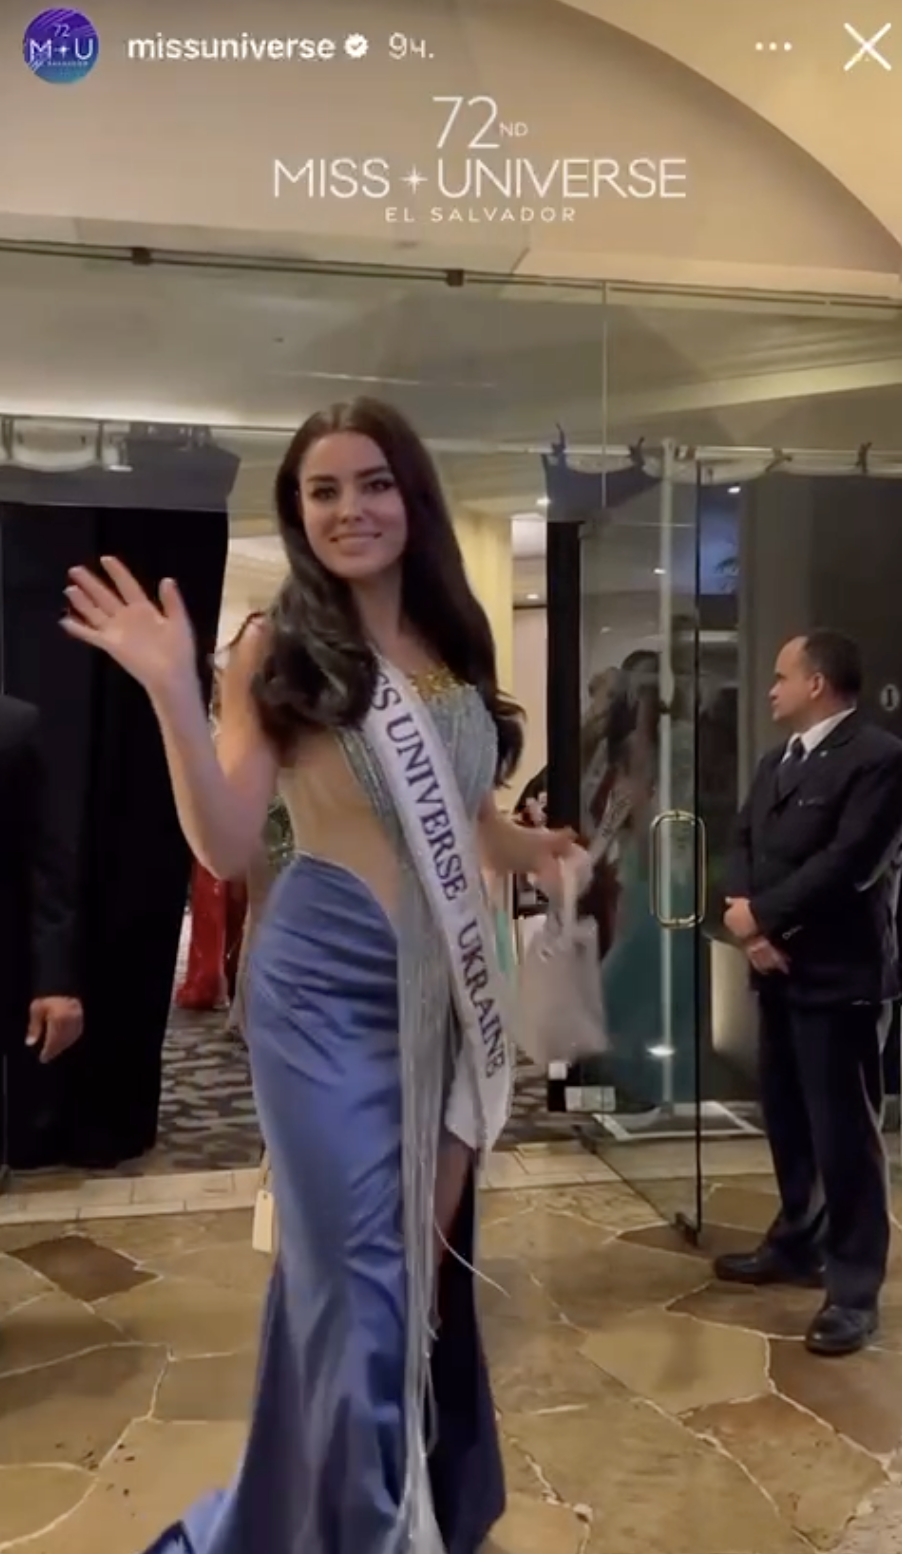 "Міс Всесвіт Україна" помічена за одним столом із росіянкою на конкурсі: не відсіла, але мала невдоволений вигляд